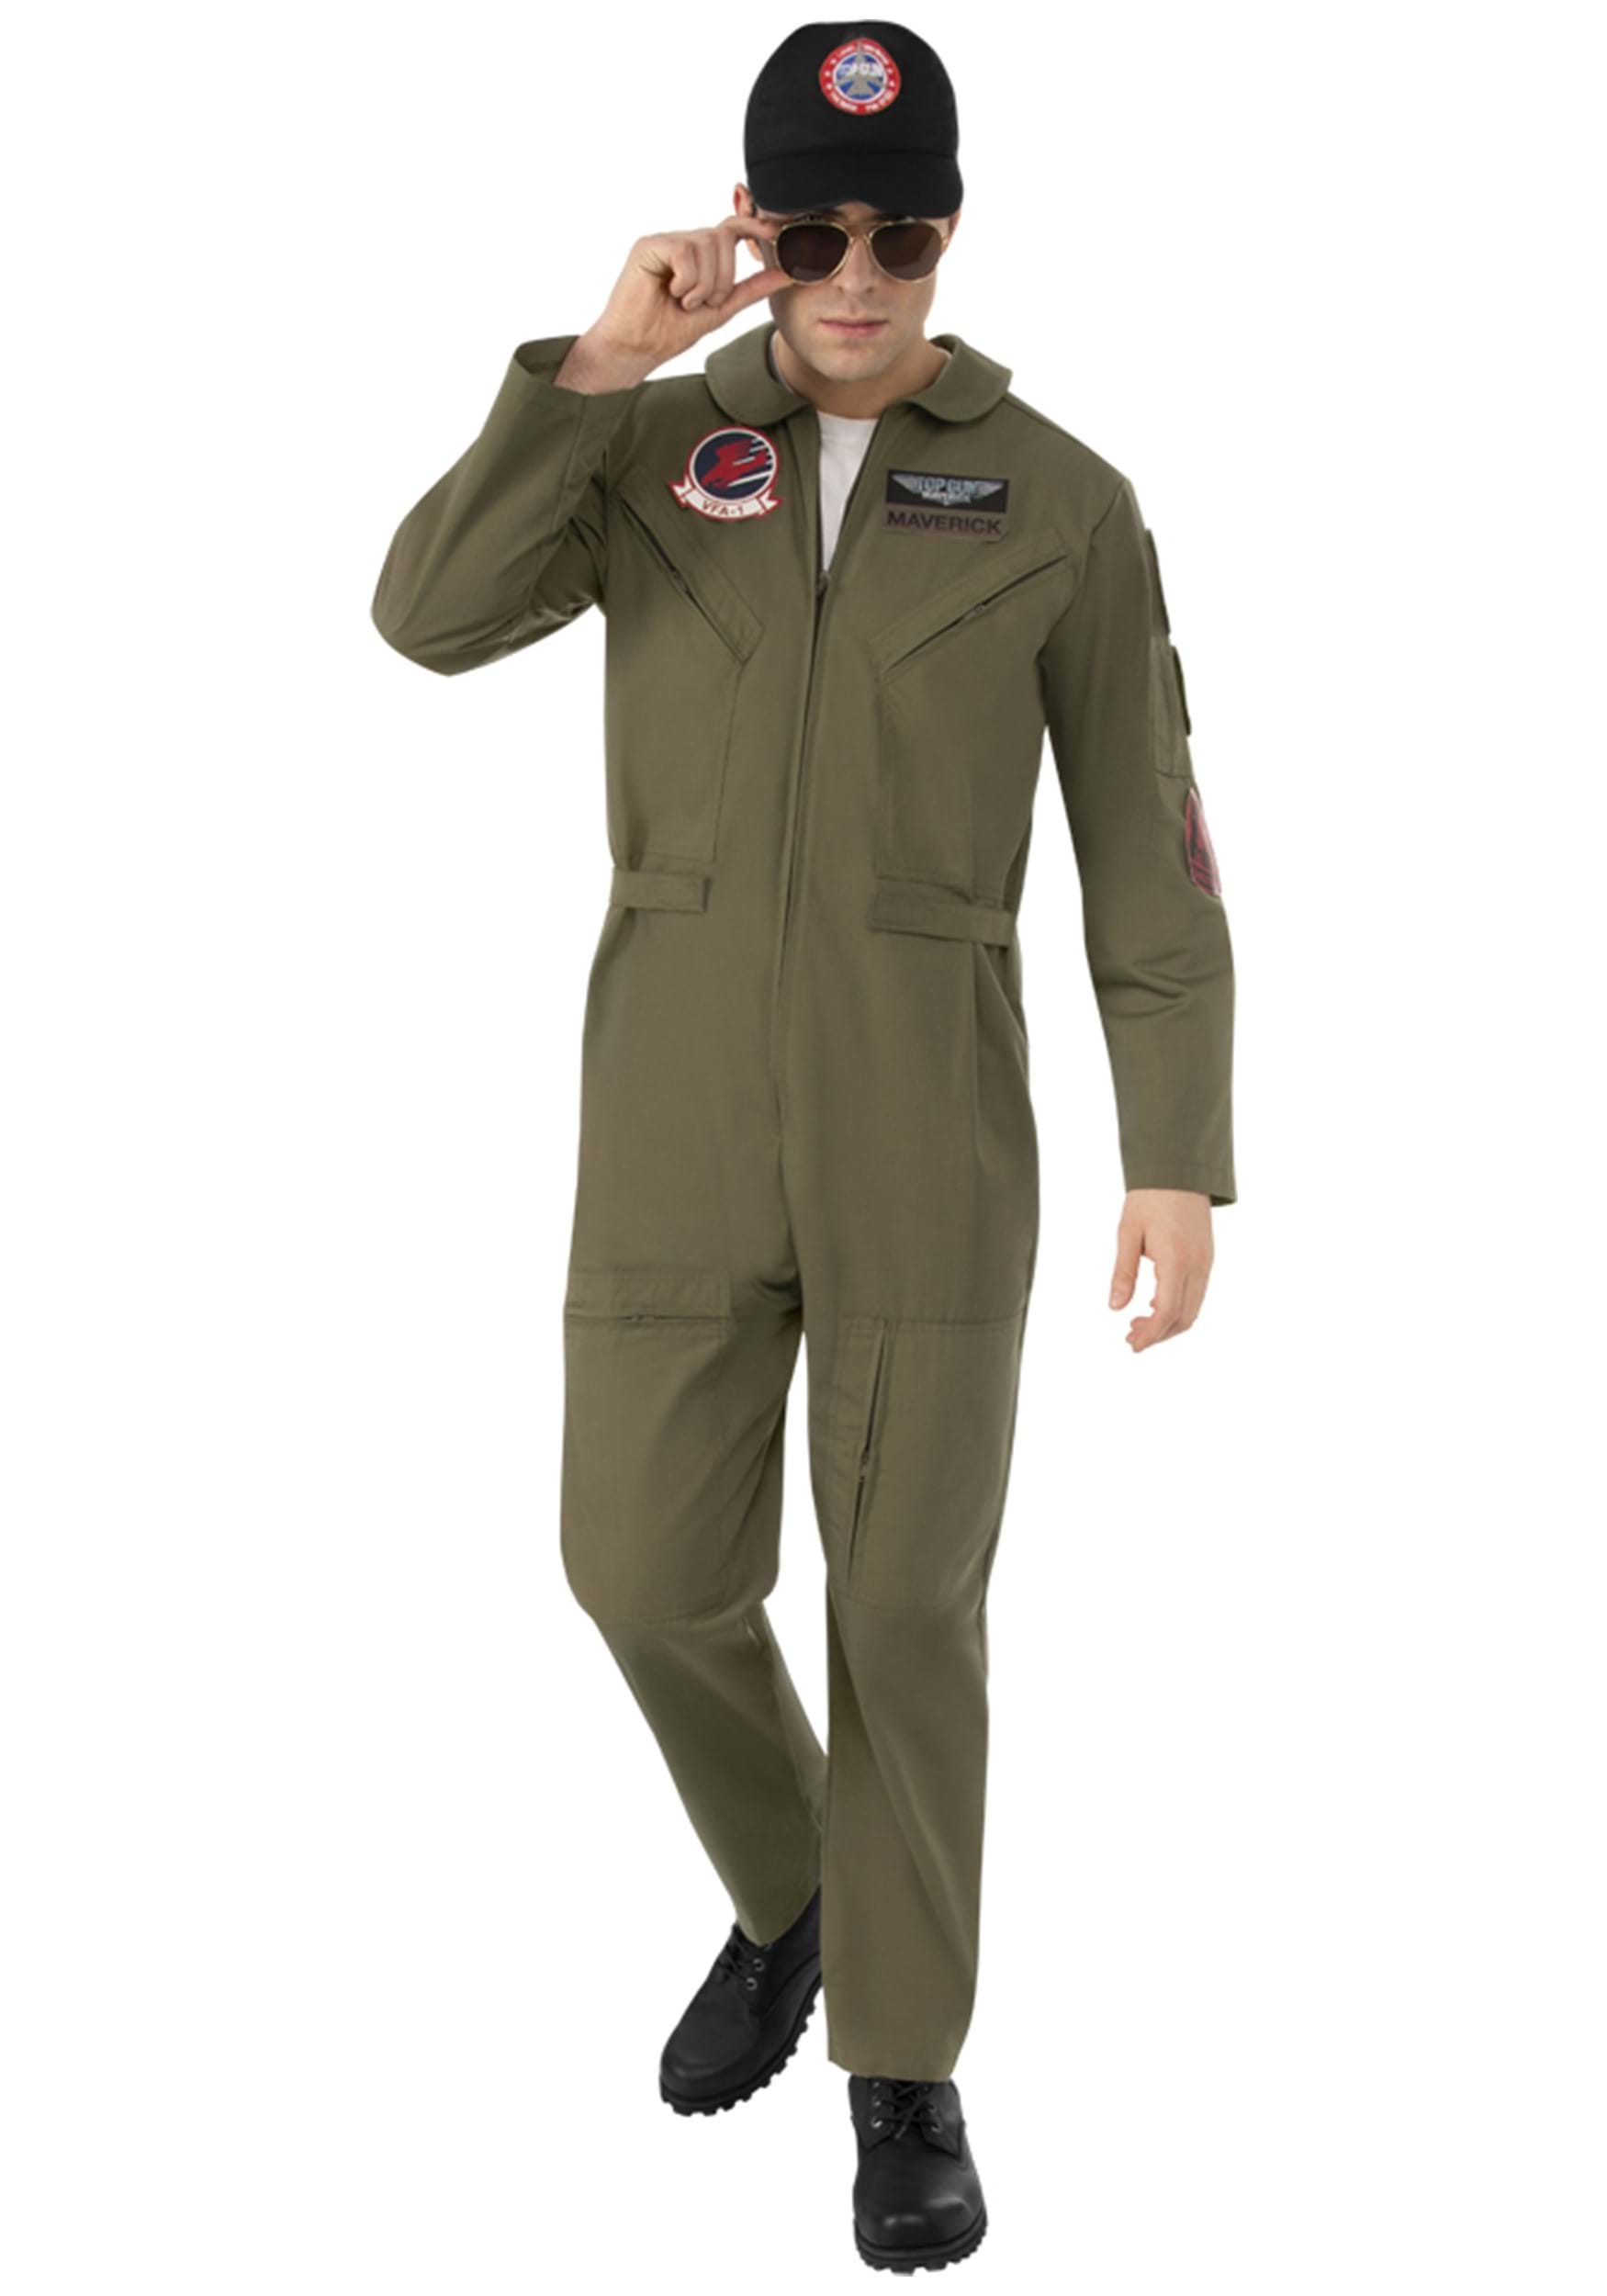 Top Gun Aviator Costume Kit Mens Or Ladies Glasses Baseball Cap Dog Tags